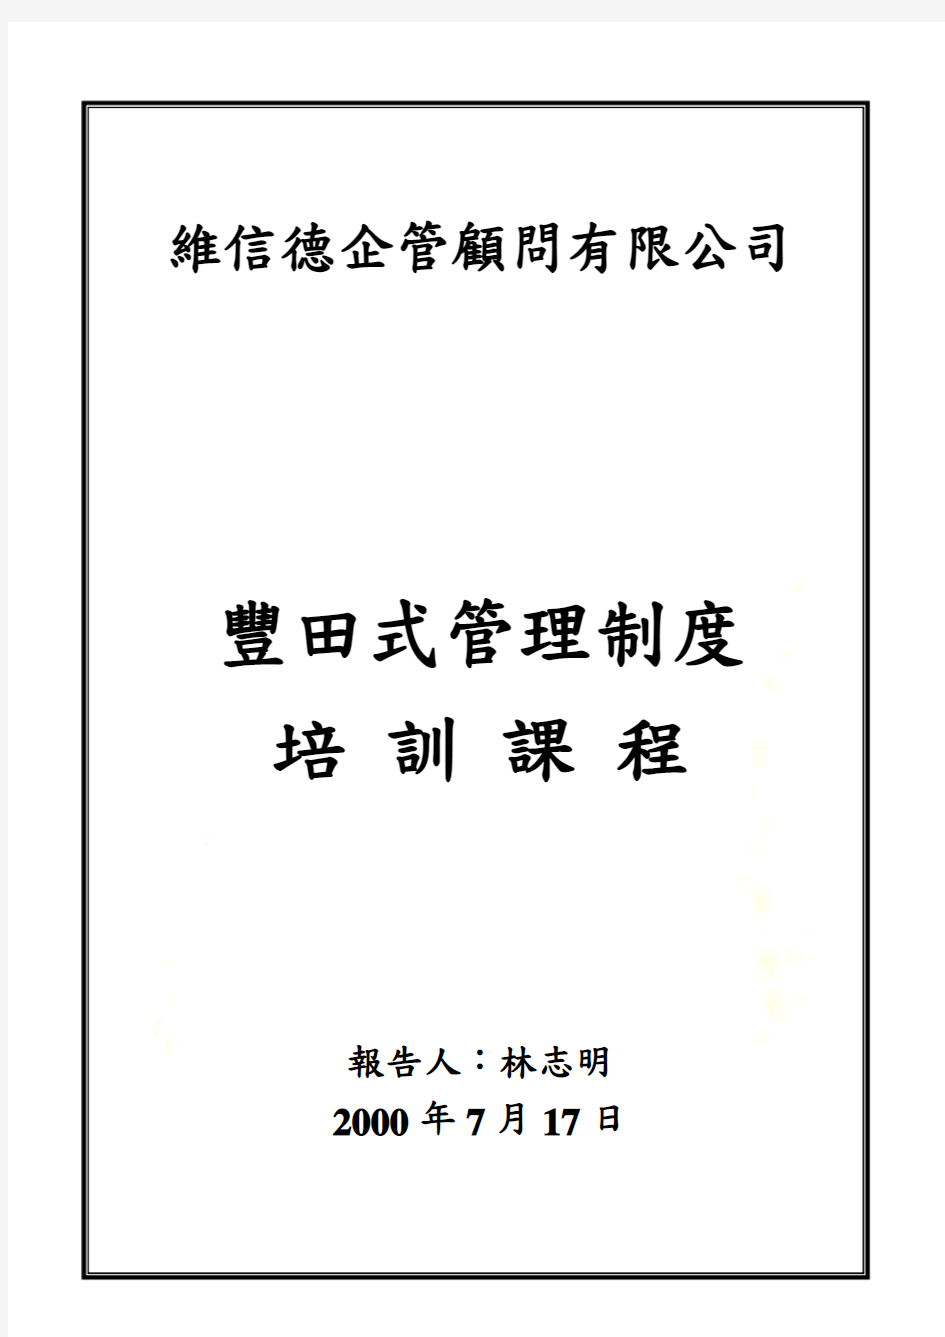 丰田生产管理系统培训课程(doc 12页)